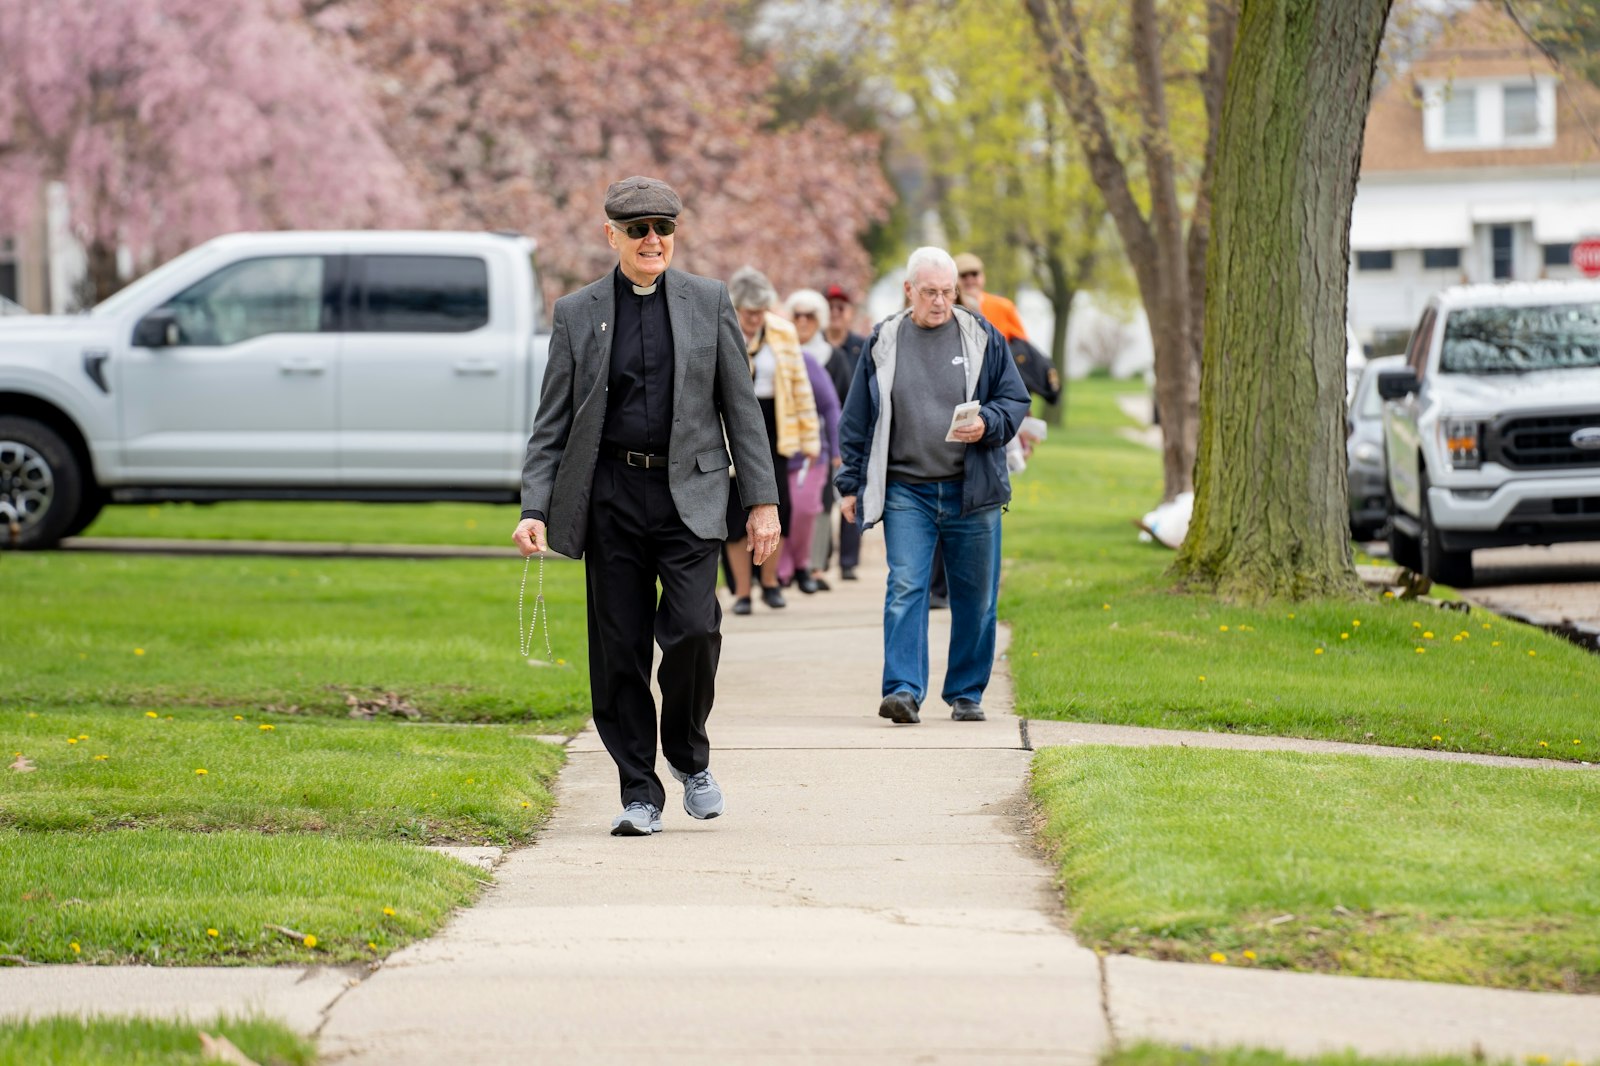 El diácono Richard Bloomfield guía a los feligreses en un paseo por la acera de un barrio de Wyandotte el 1 de mayo. Los "paseos del rosario" forman parte de la comunidad parroquial desde 2002, cuando se instalaron las "cajas del rosario".